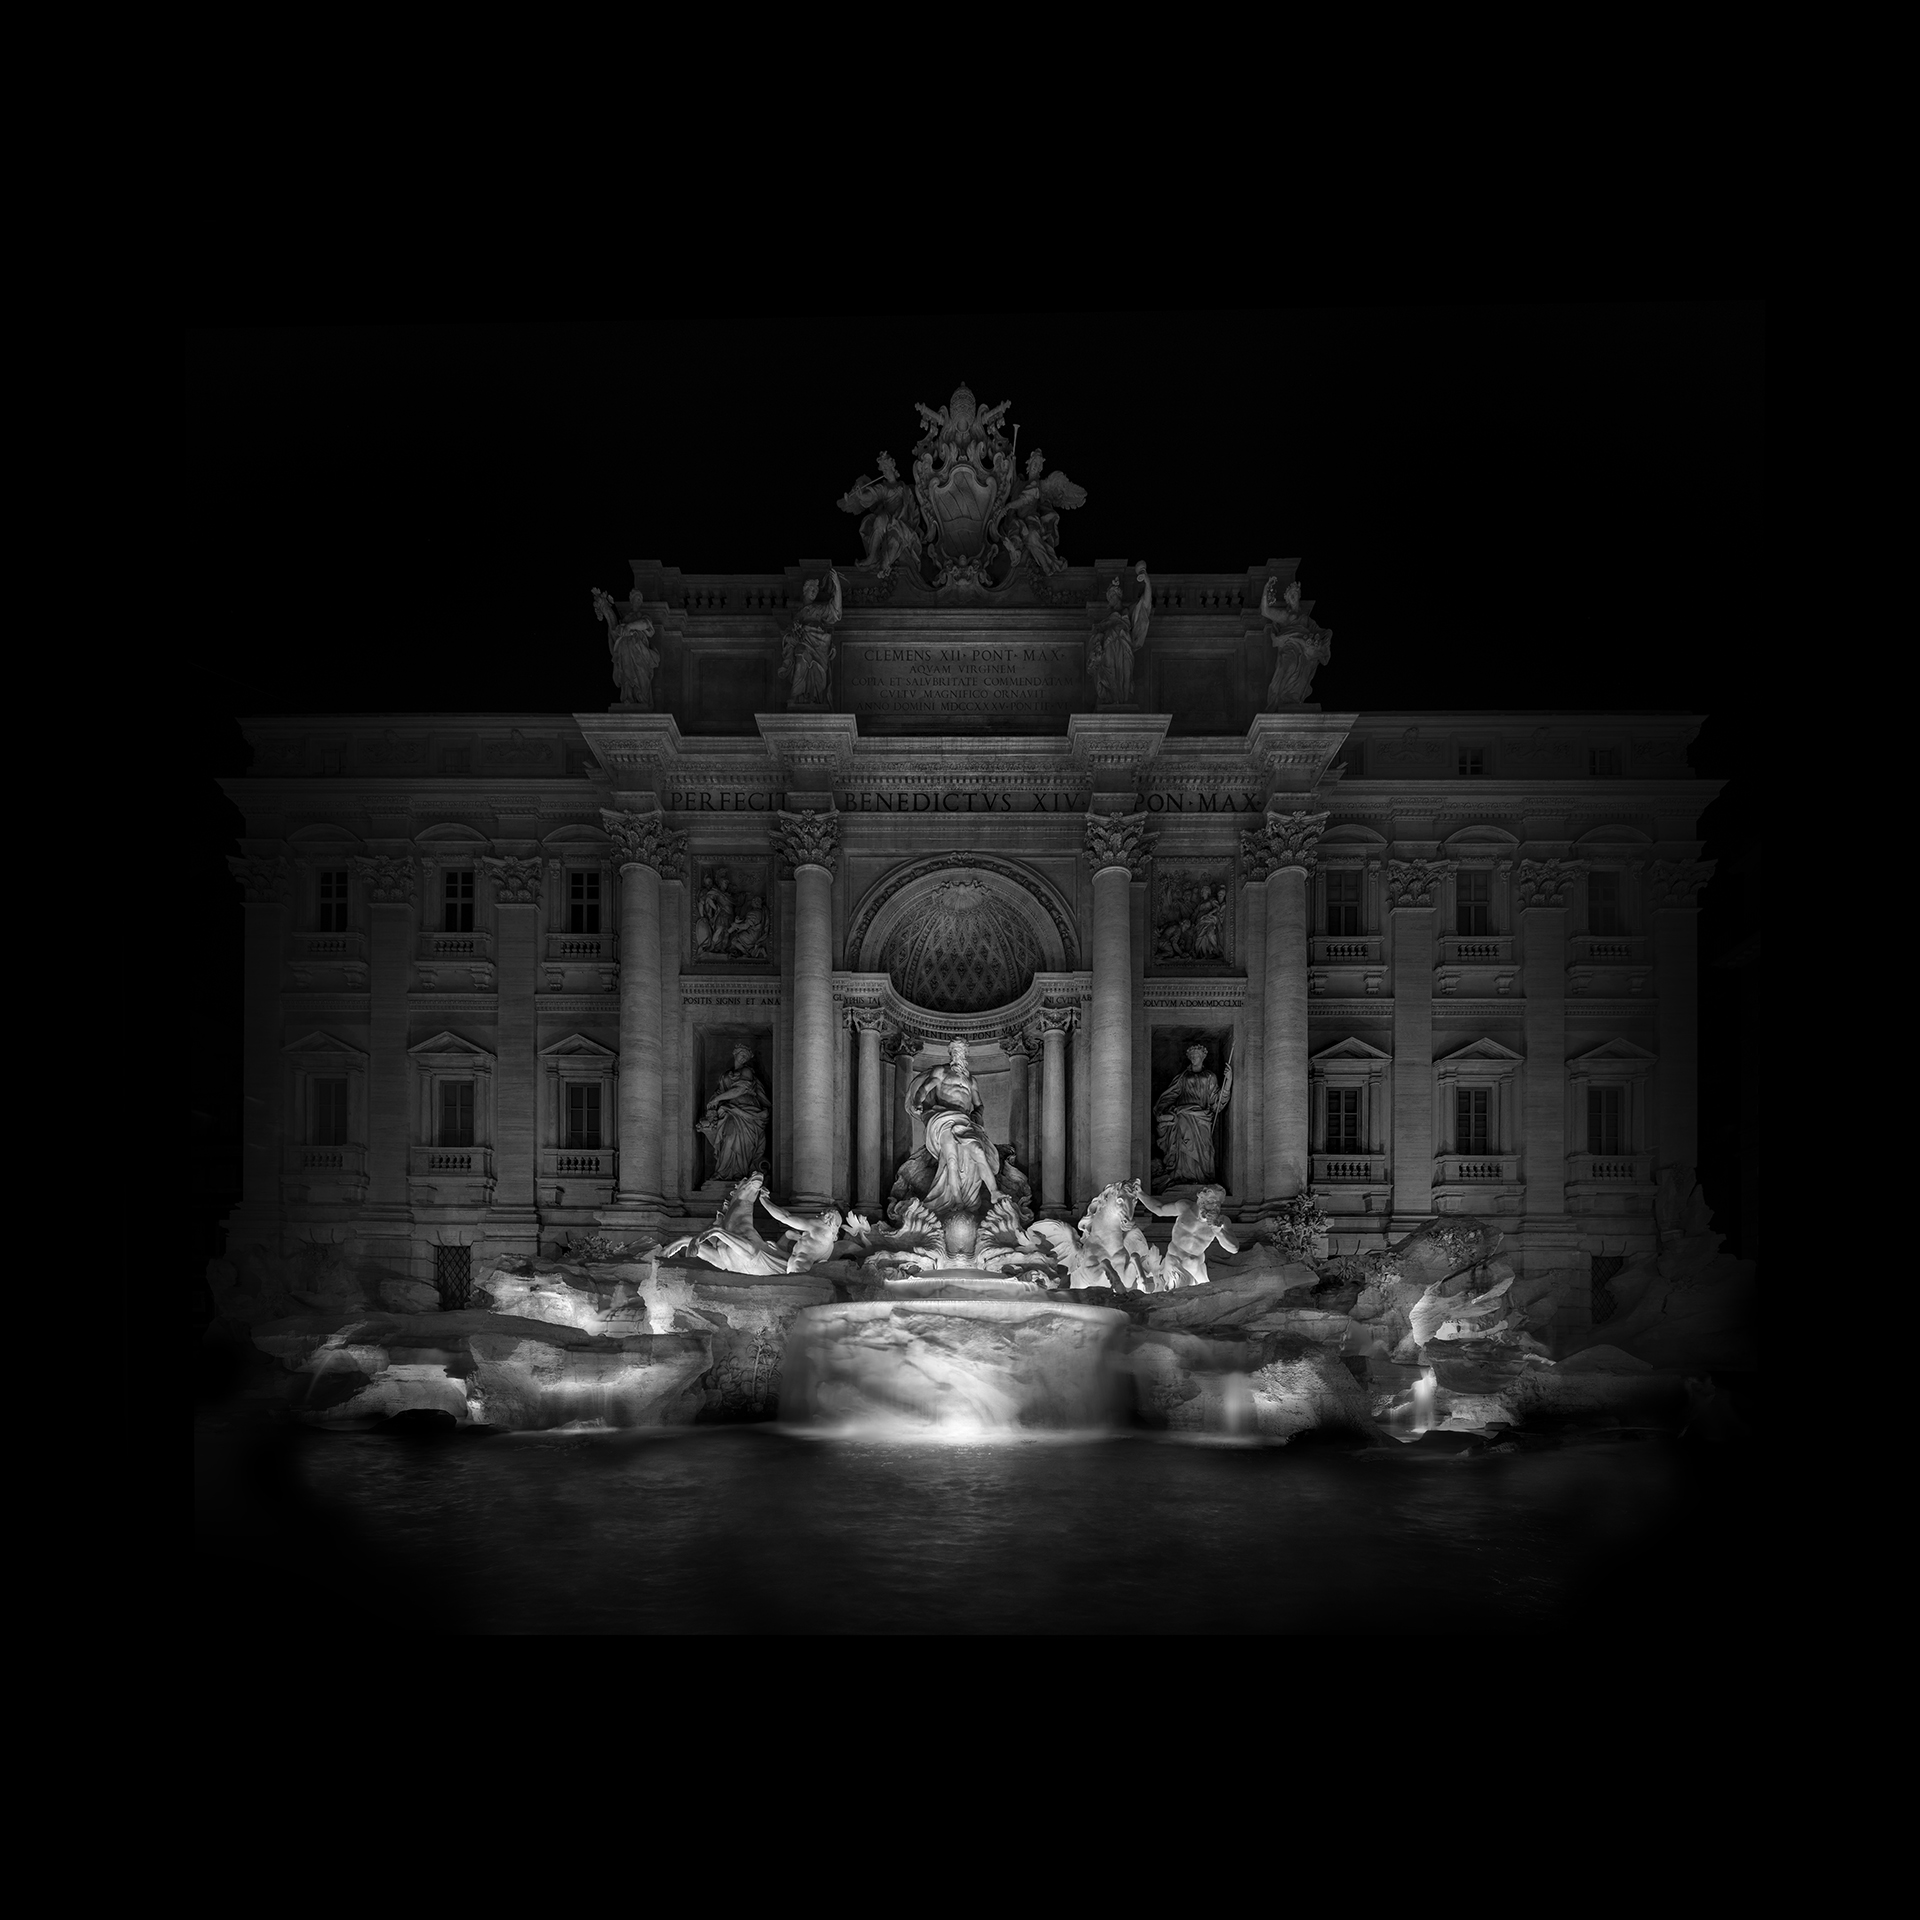 Photographie de la fontaine de Trevi par Alessandro Piredda